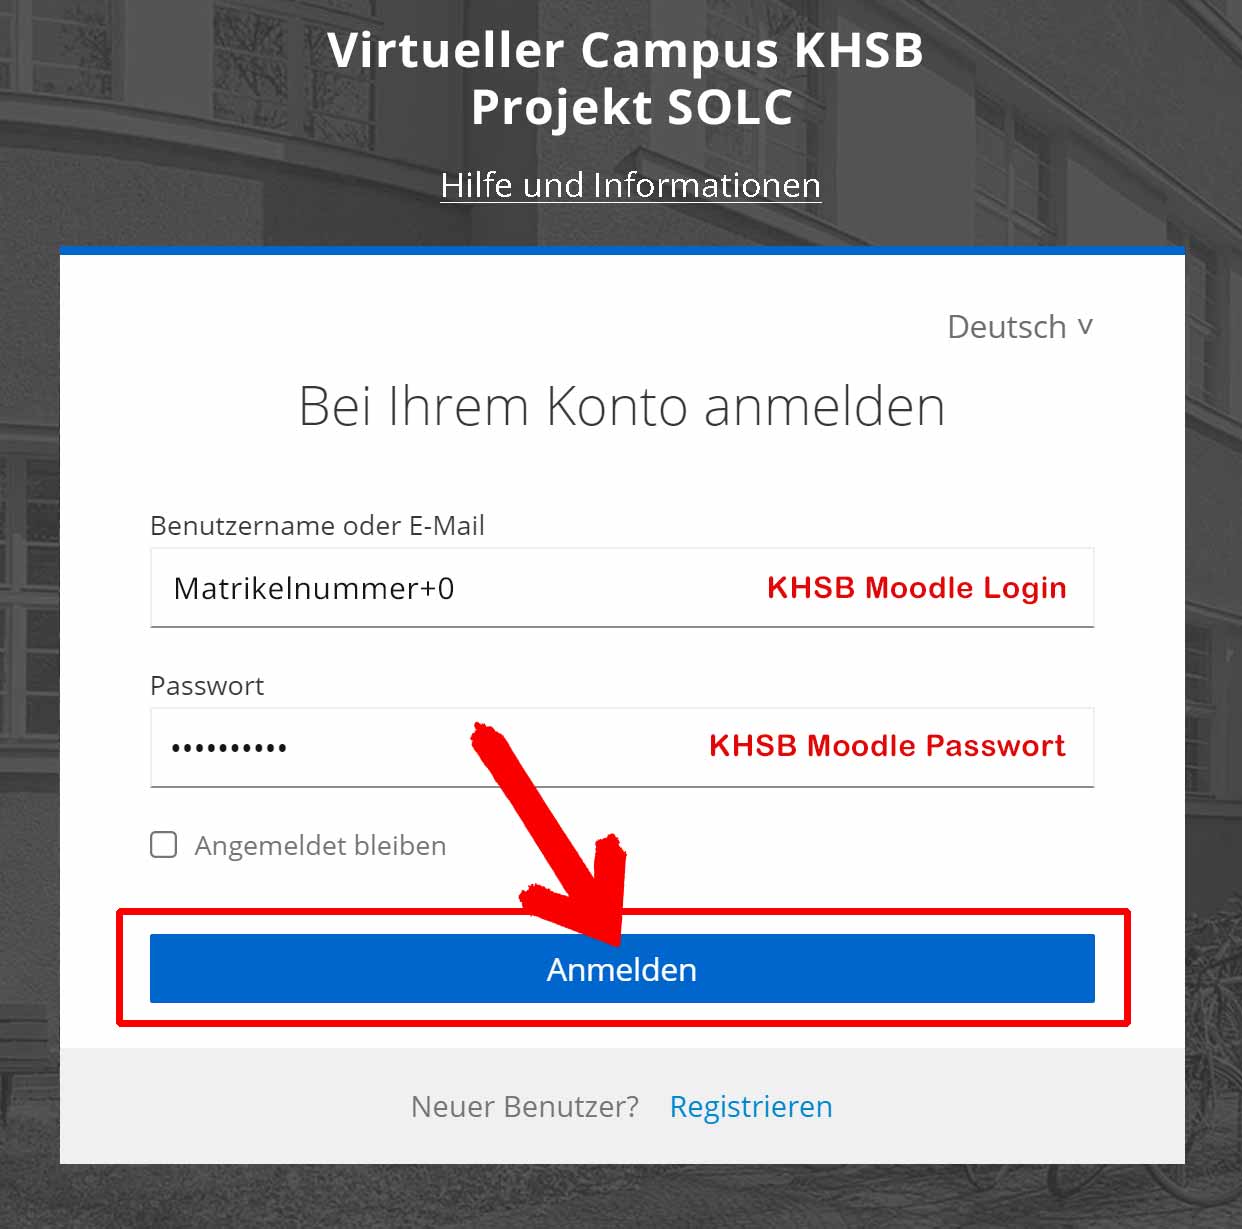 Loginseite mit Beispieldaten des VC unter visit.solc-khsb.de